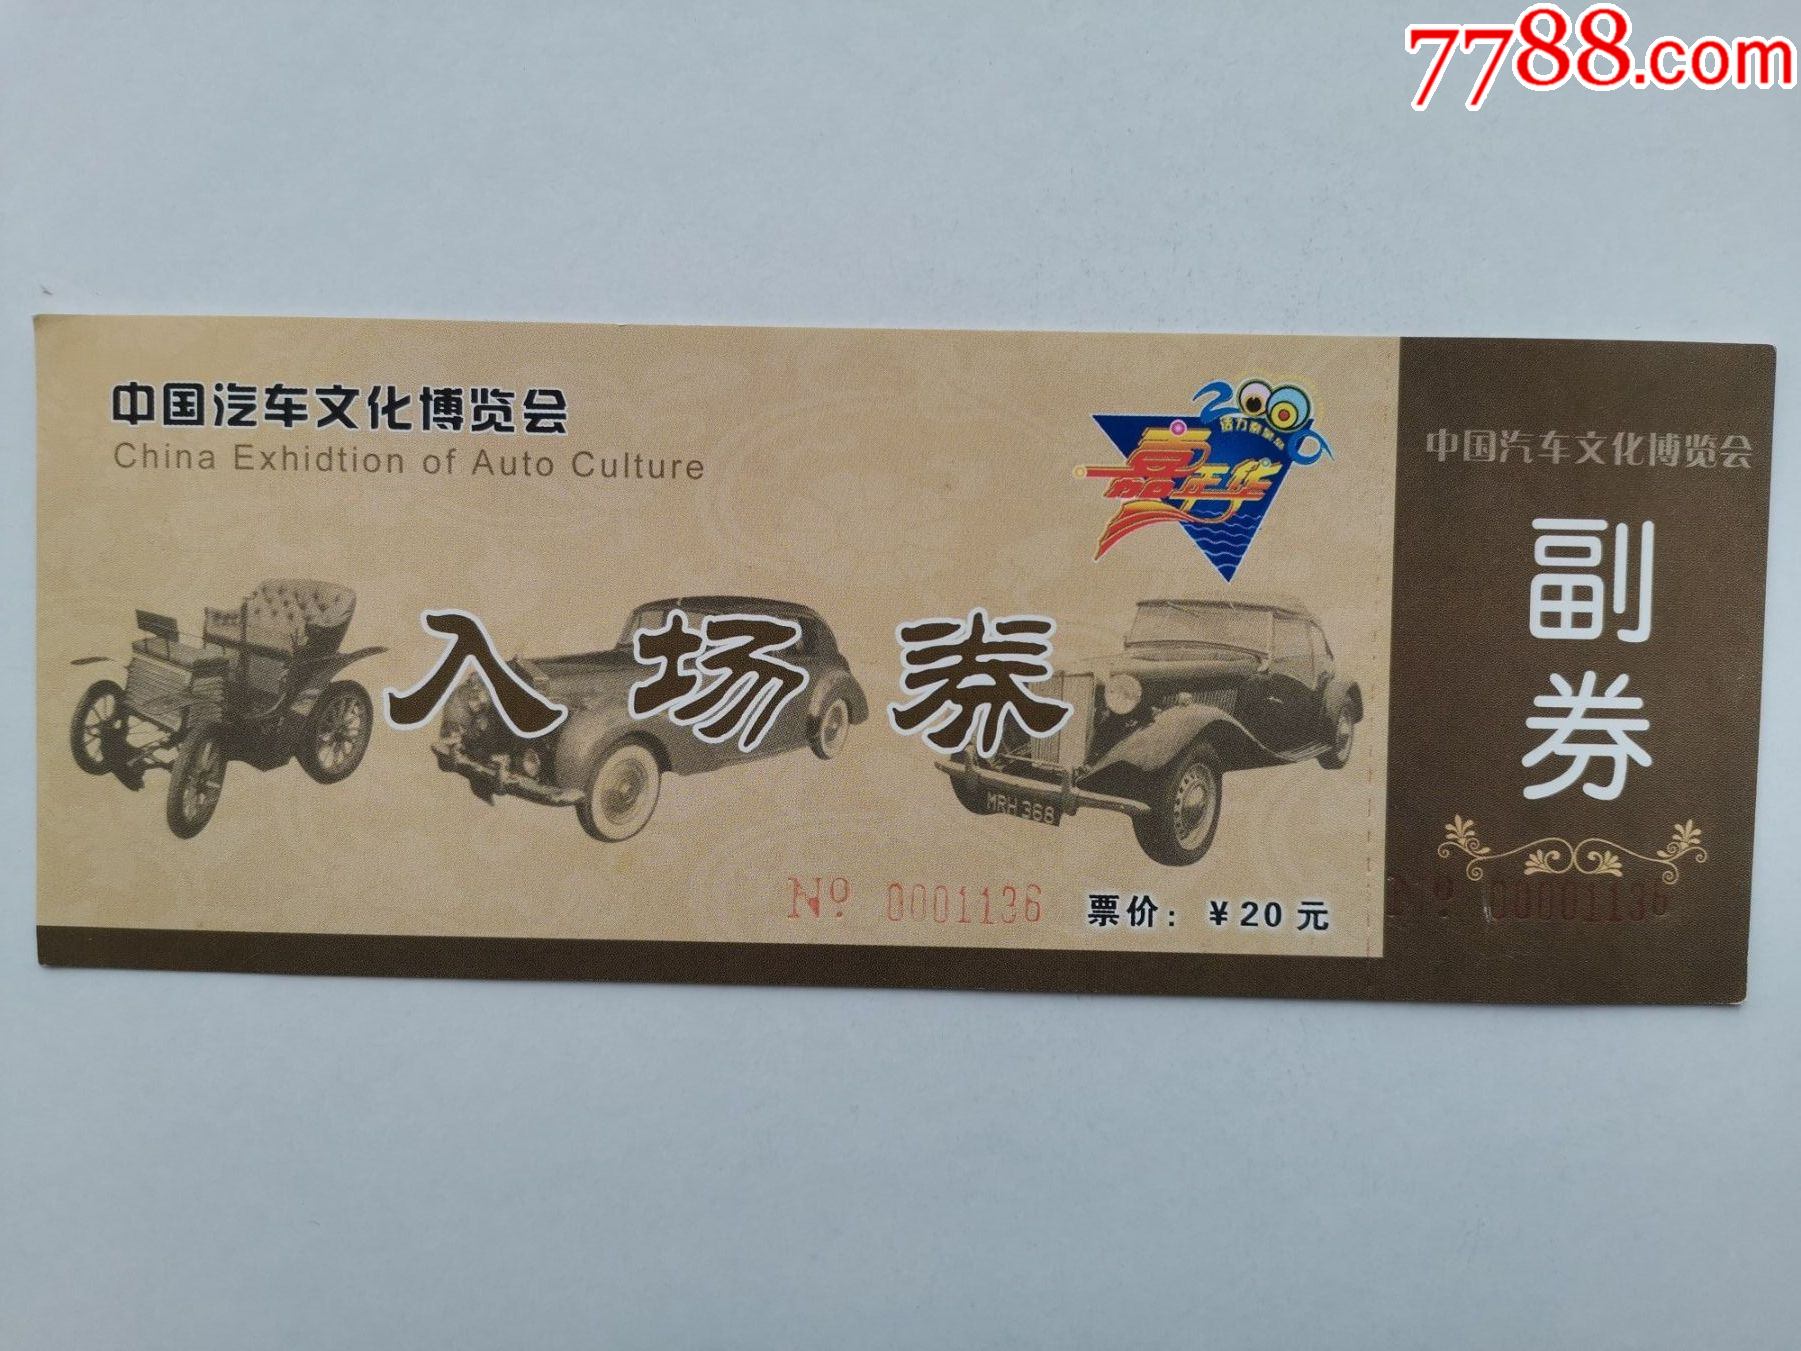 中国汽车文化博览会入场券